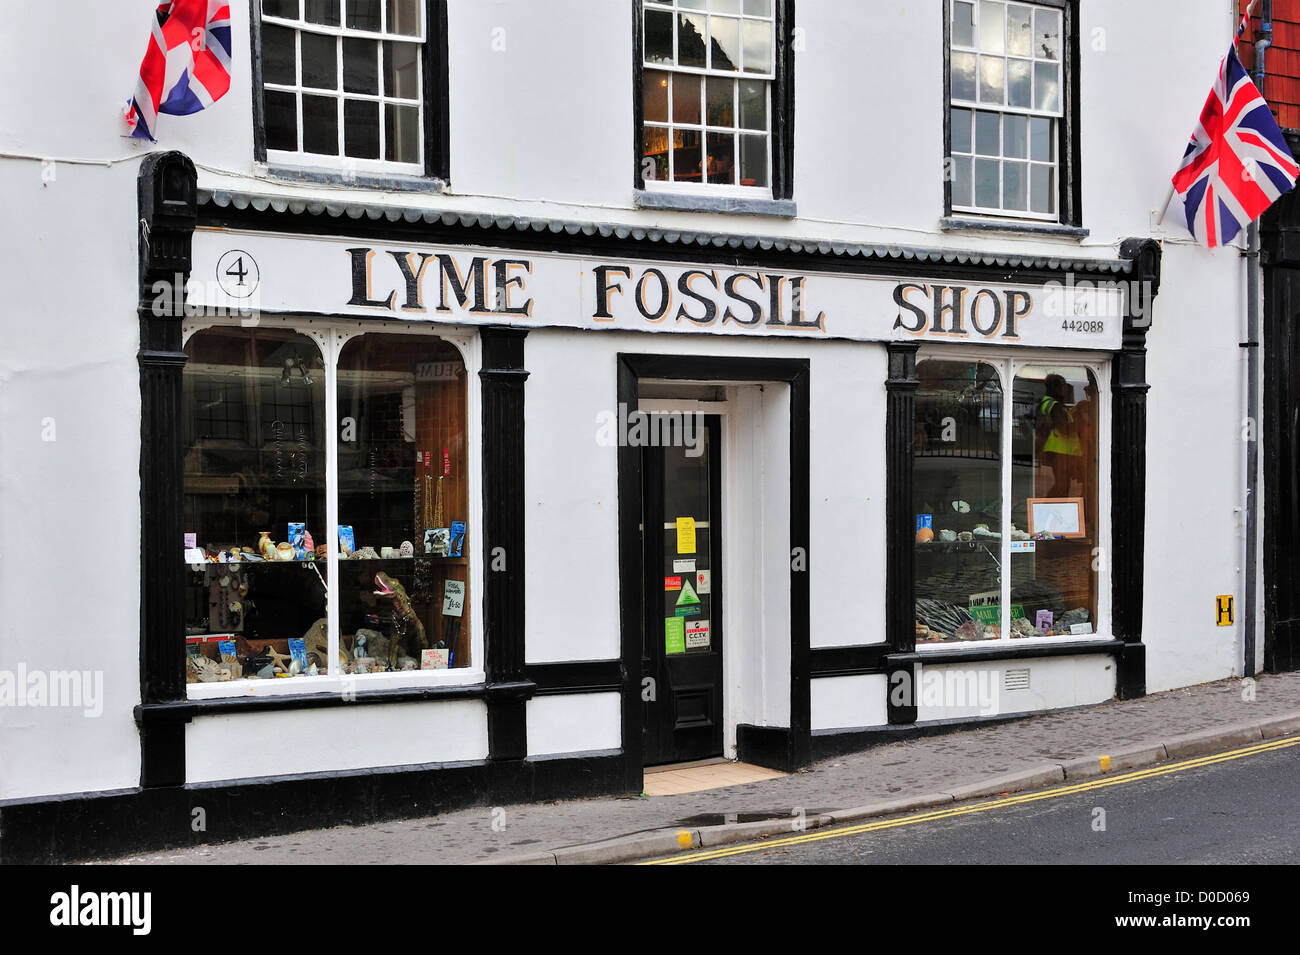 Combustibles fossiles Lyme boutique vendant à Lyme Regis, sur la côte jurassique, Dorset, dans le sud de l'Angleterre, Royaume-Uni Banque D'Images